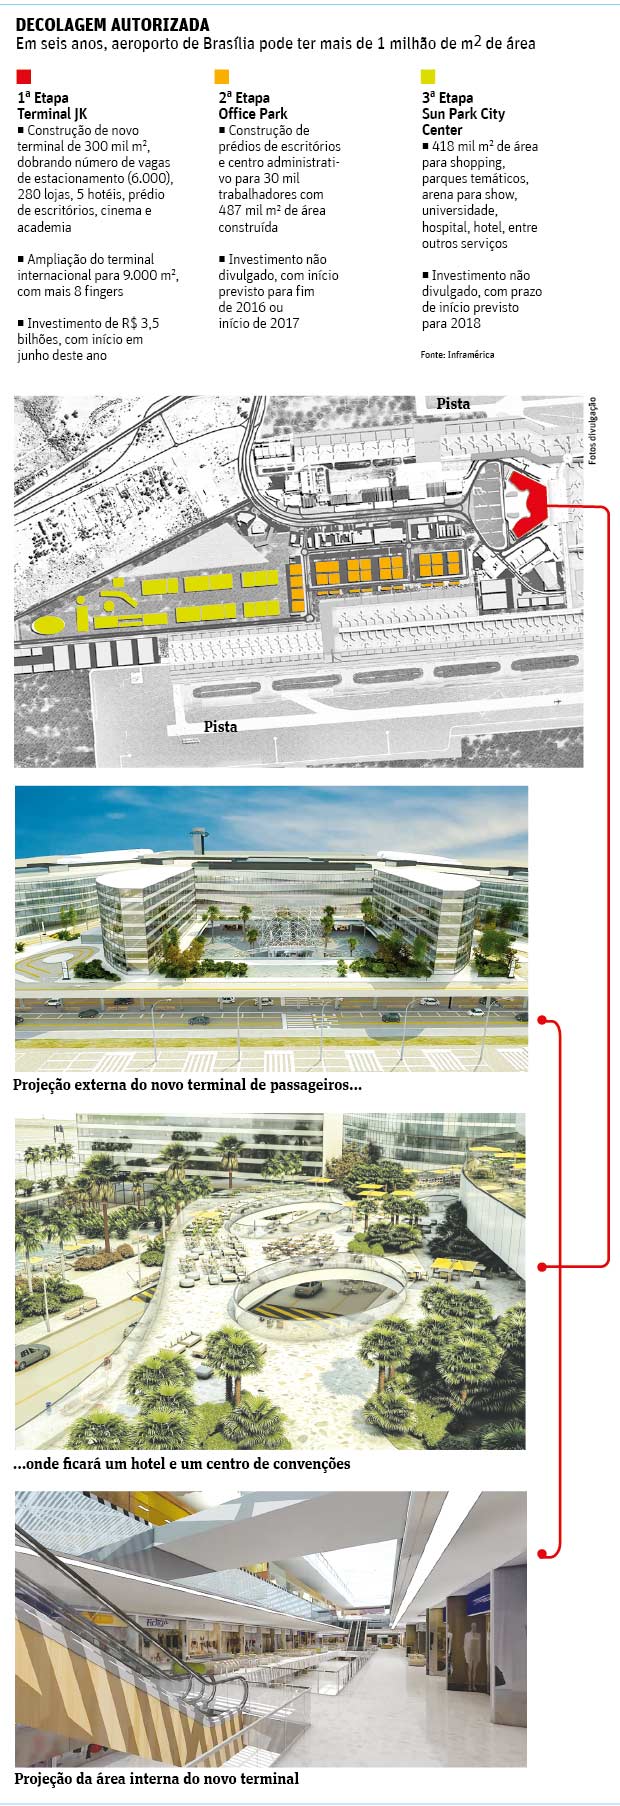 DECOLAGEM AUTORIZADA Em seis anos, aeroporto de Braslia pode ter mais de 1 milho de m2 de rea